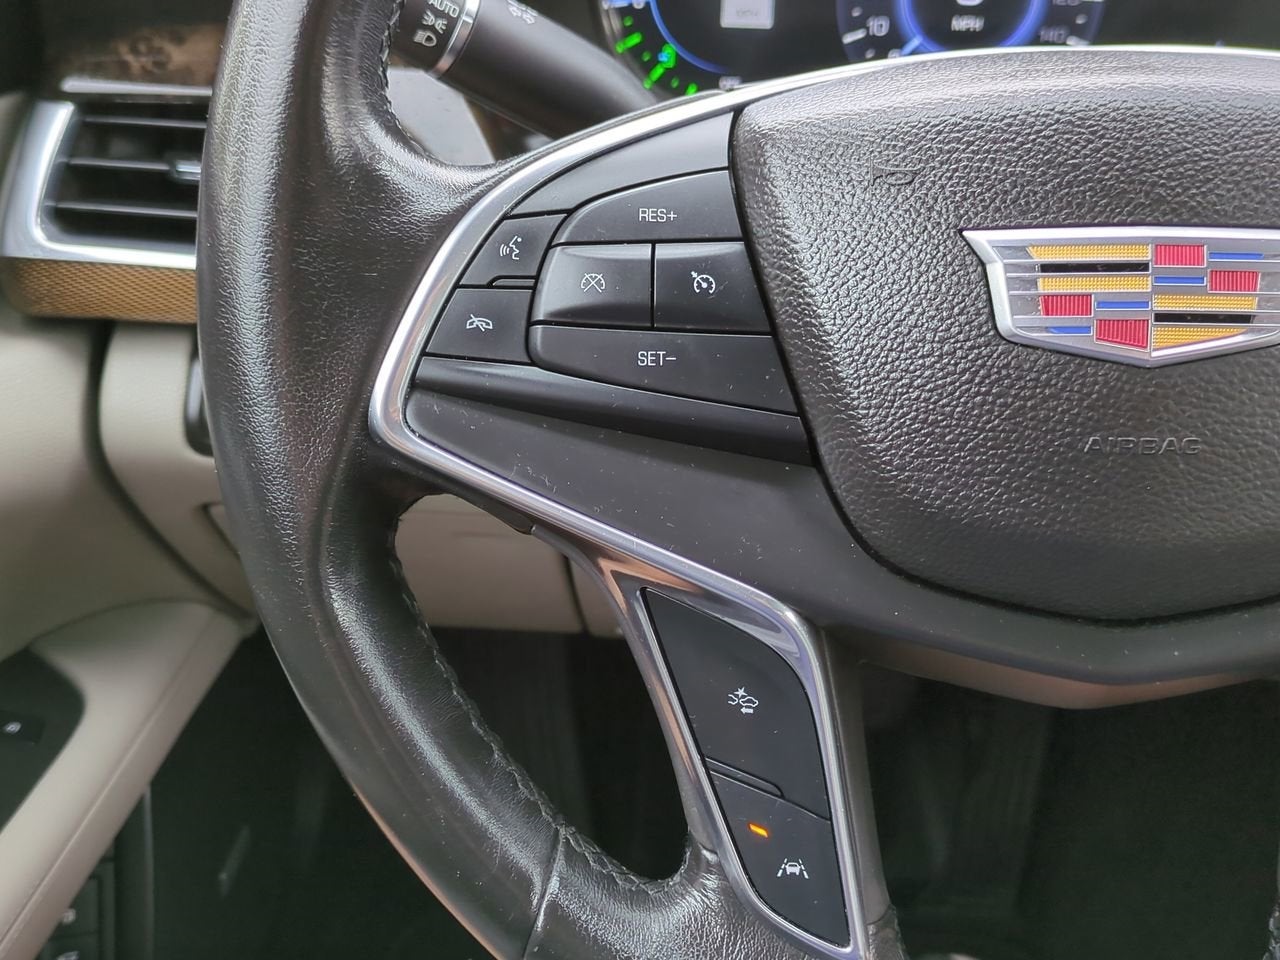 2017 Cadillac CT6 PLUG-IN RWD